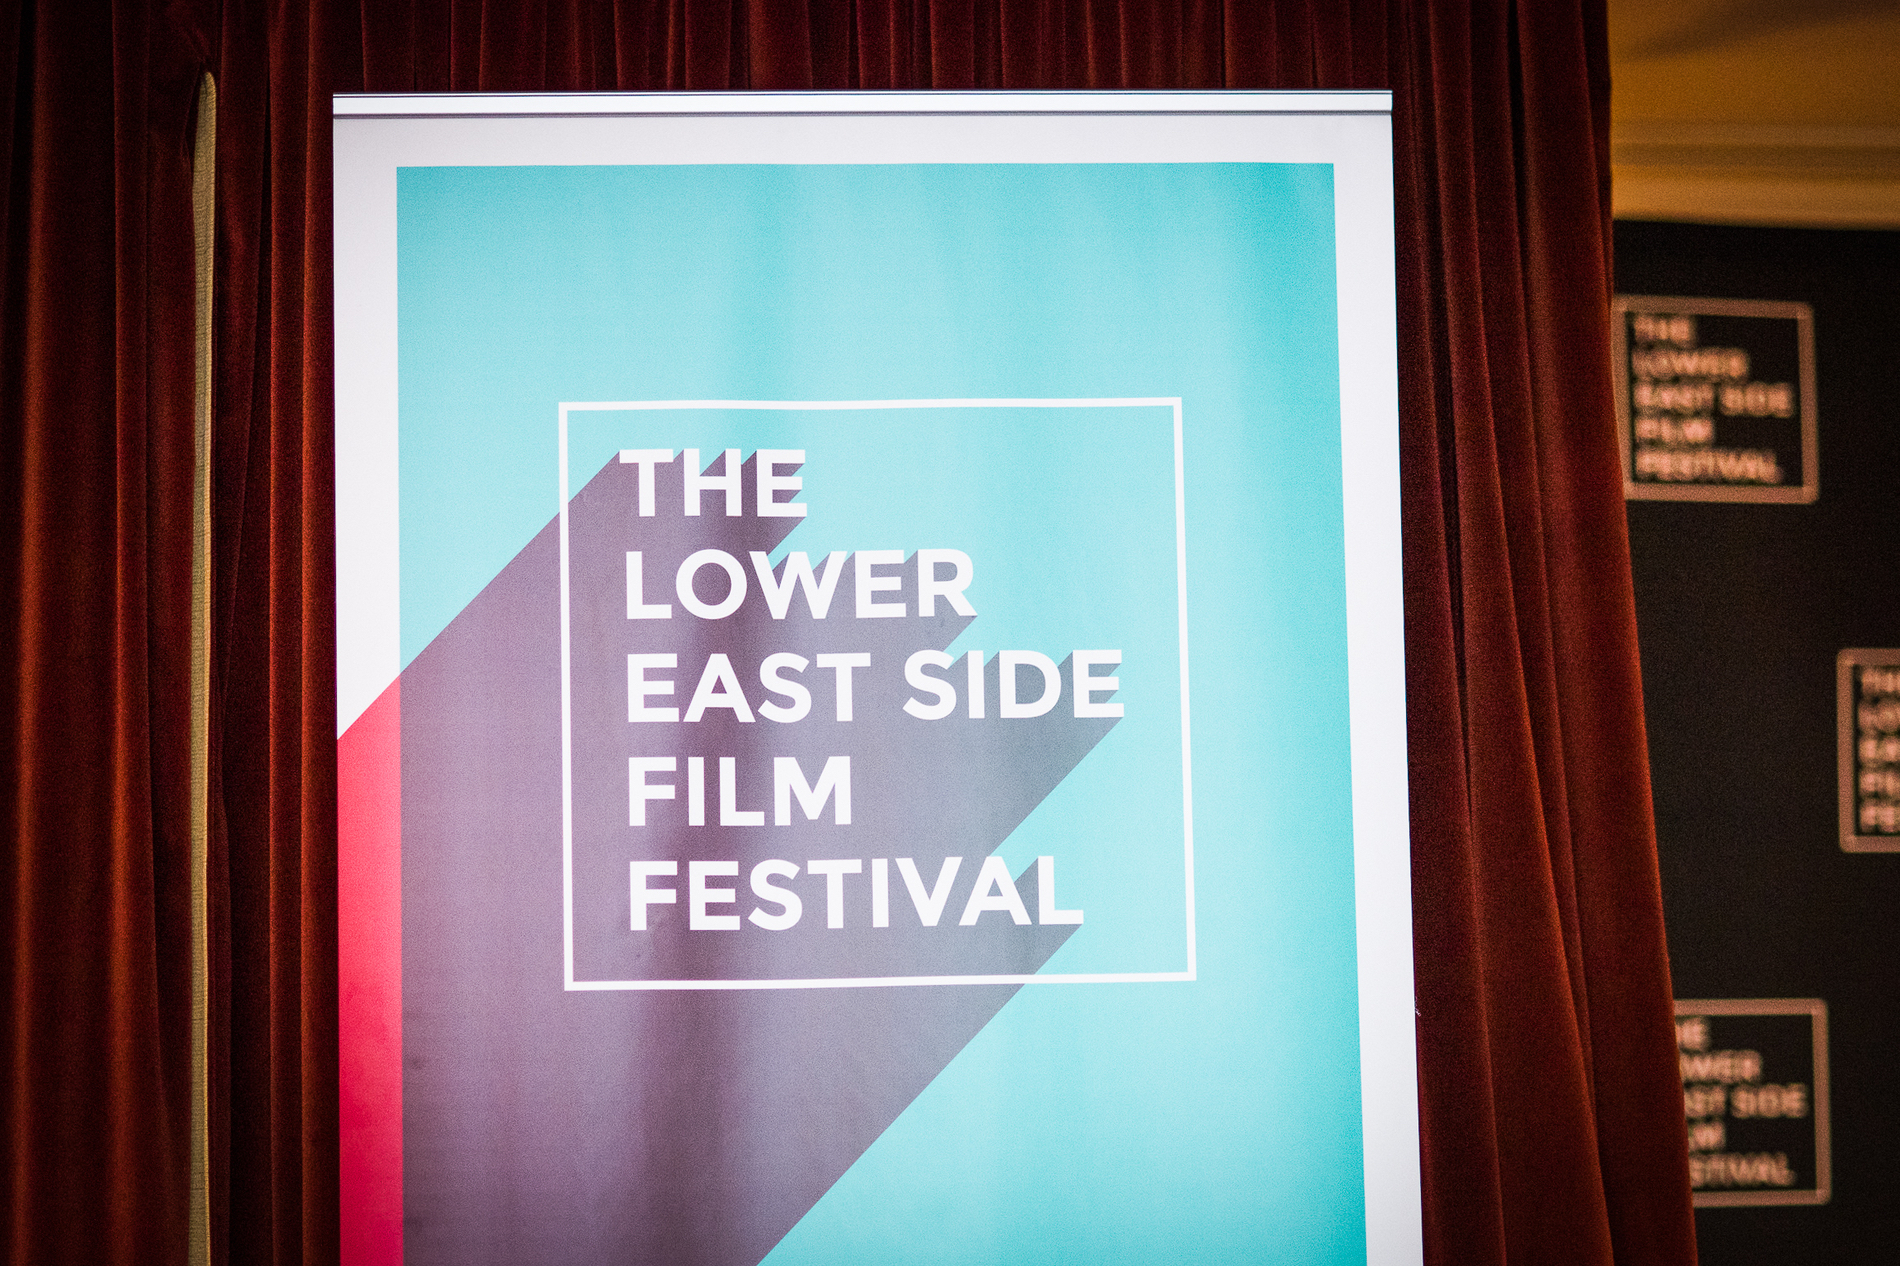 Lower East Side Film Festival 2016